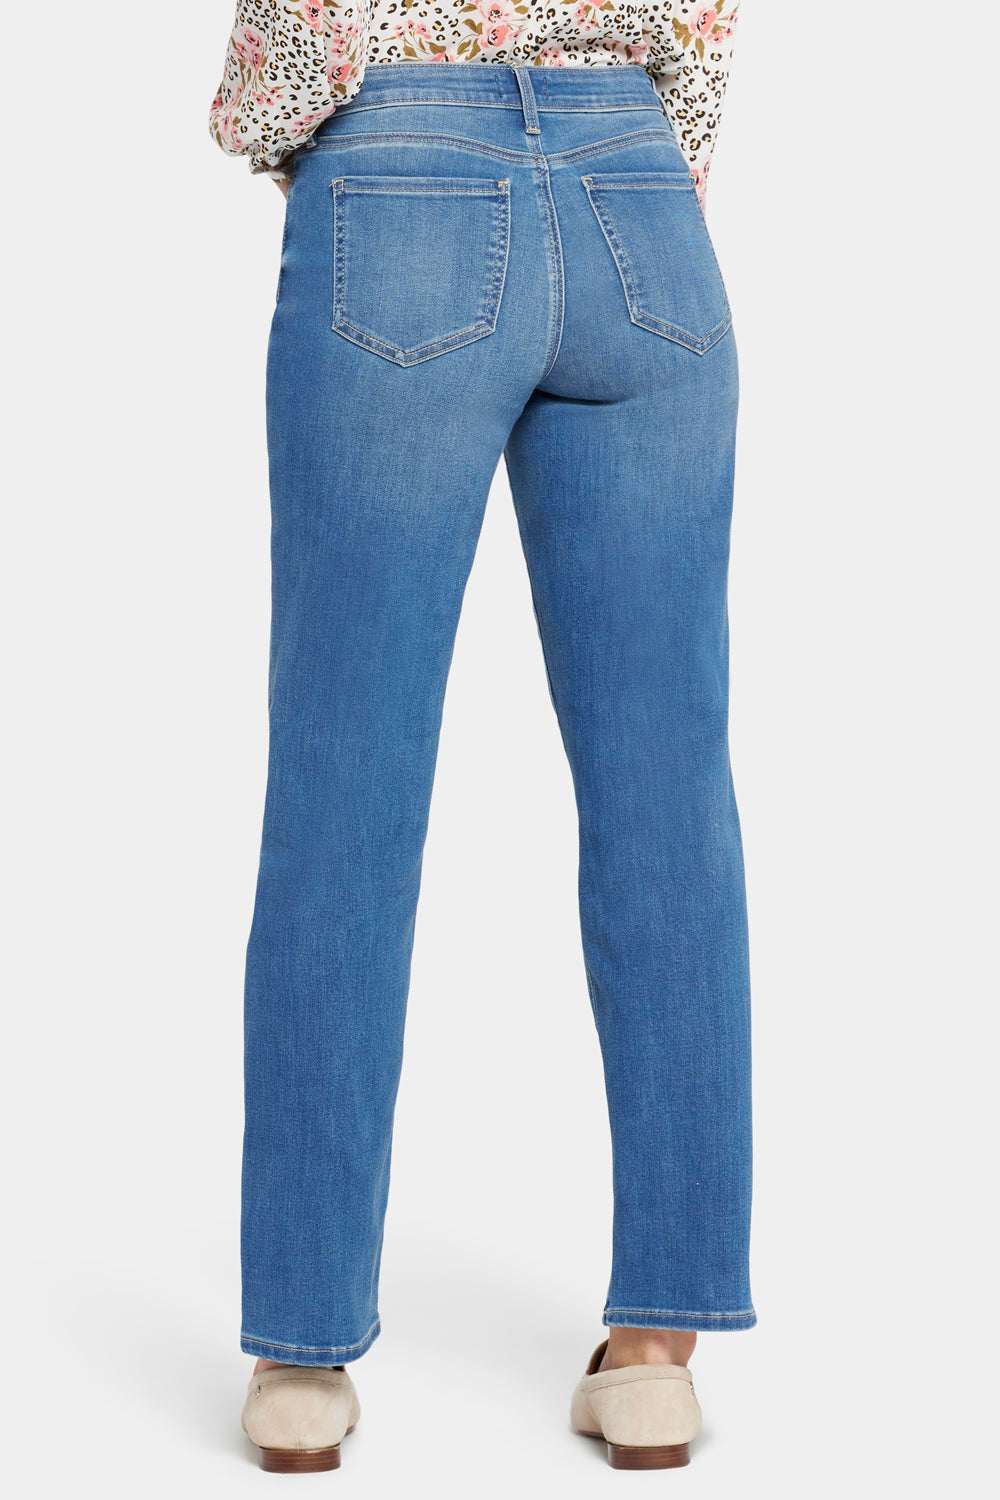 NYDJ Relaxed Slender Jeans  - Lovesick